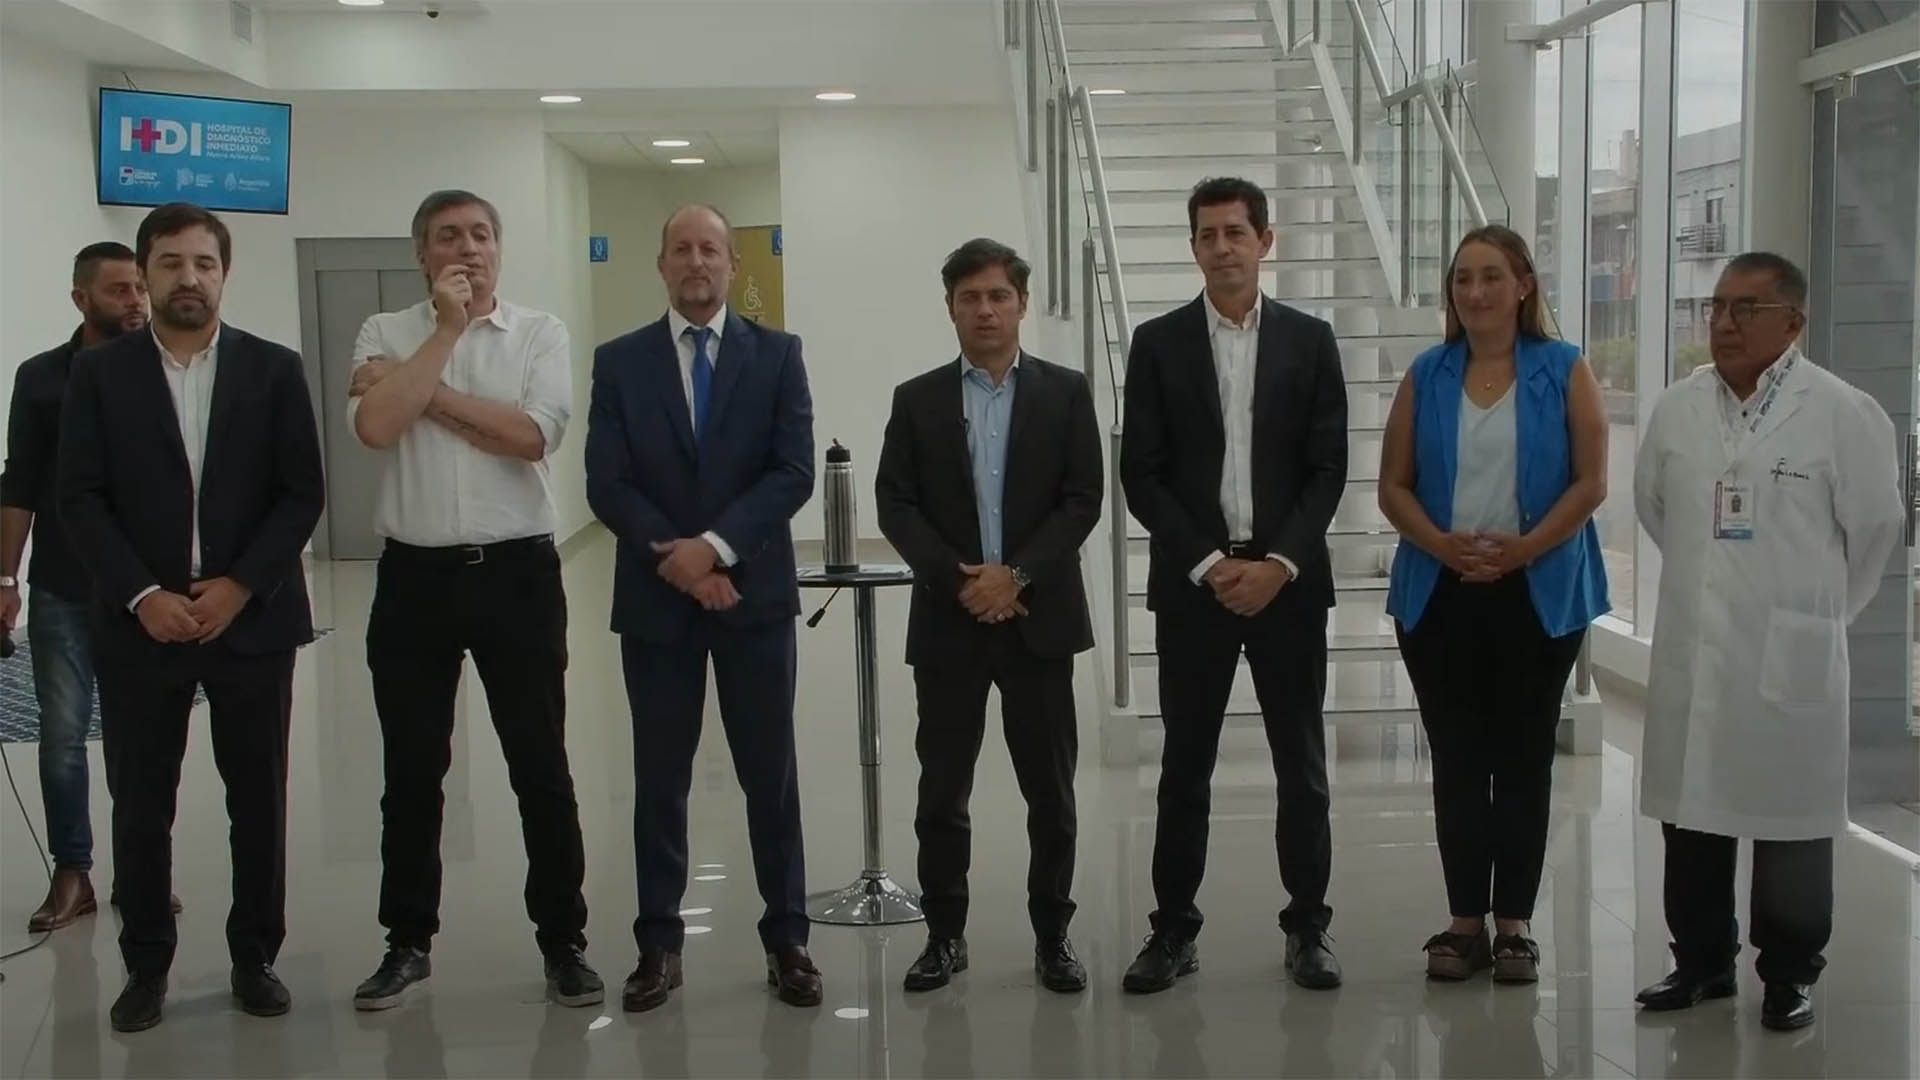 Axel Kicillof, Máximo Kirchner, Wado de Pedro y Martín Insaurralde dieron una señal de unidad en plena reorganización interna de La Cámpora